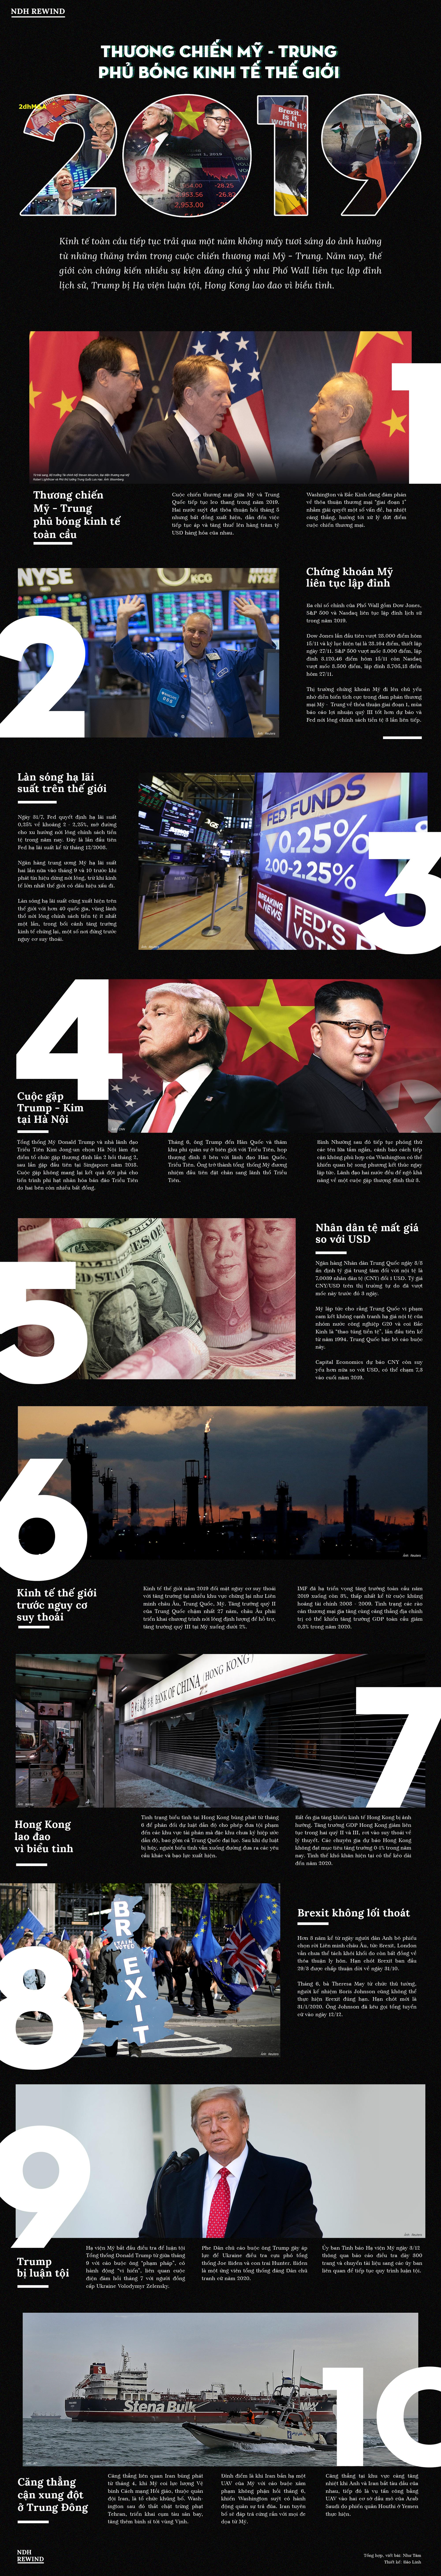 Thương chiến Mỹ - Trung phủ bóng kinh tế thế giới 2019